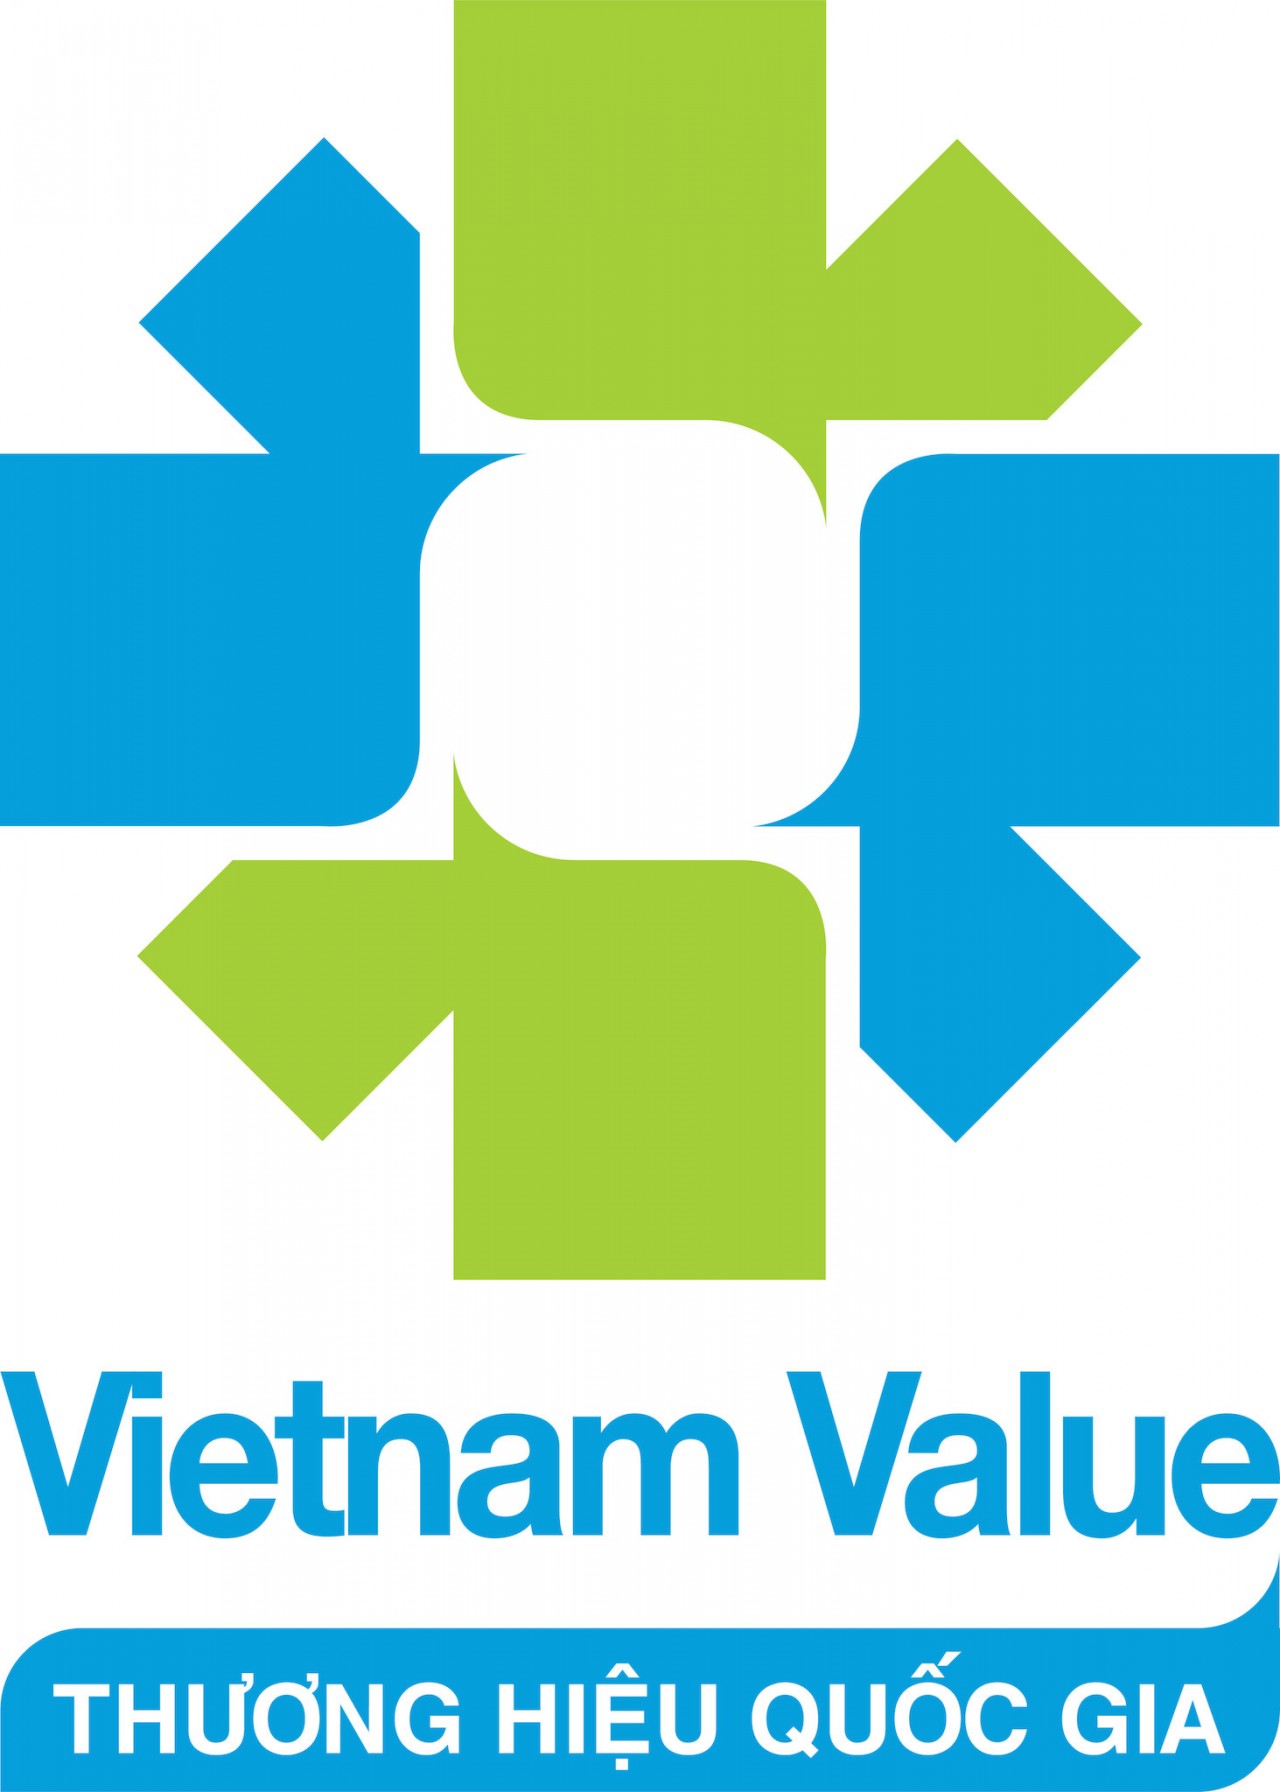 Vietnam Value logo.